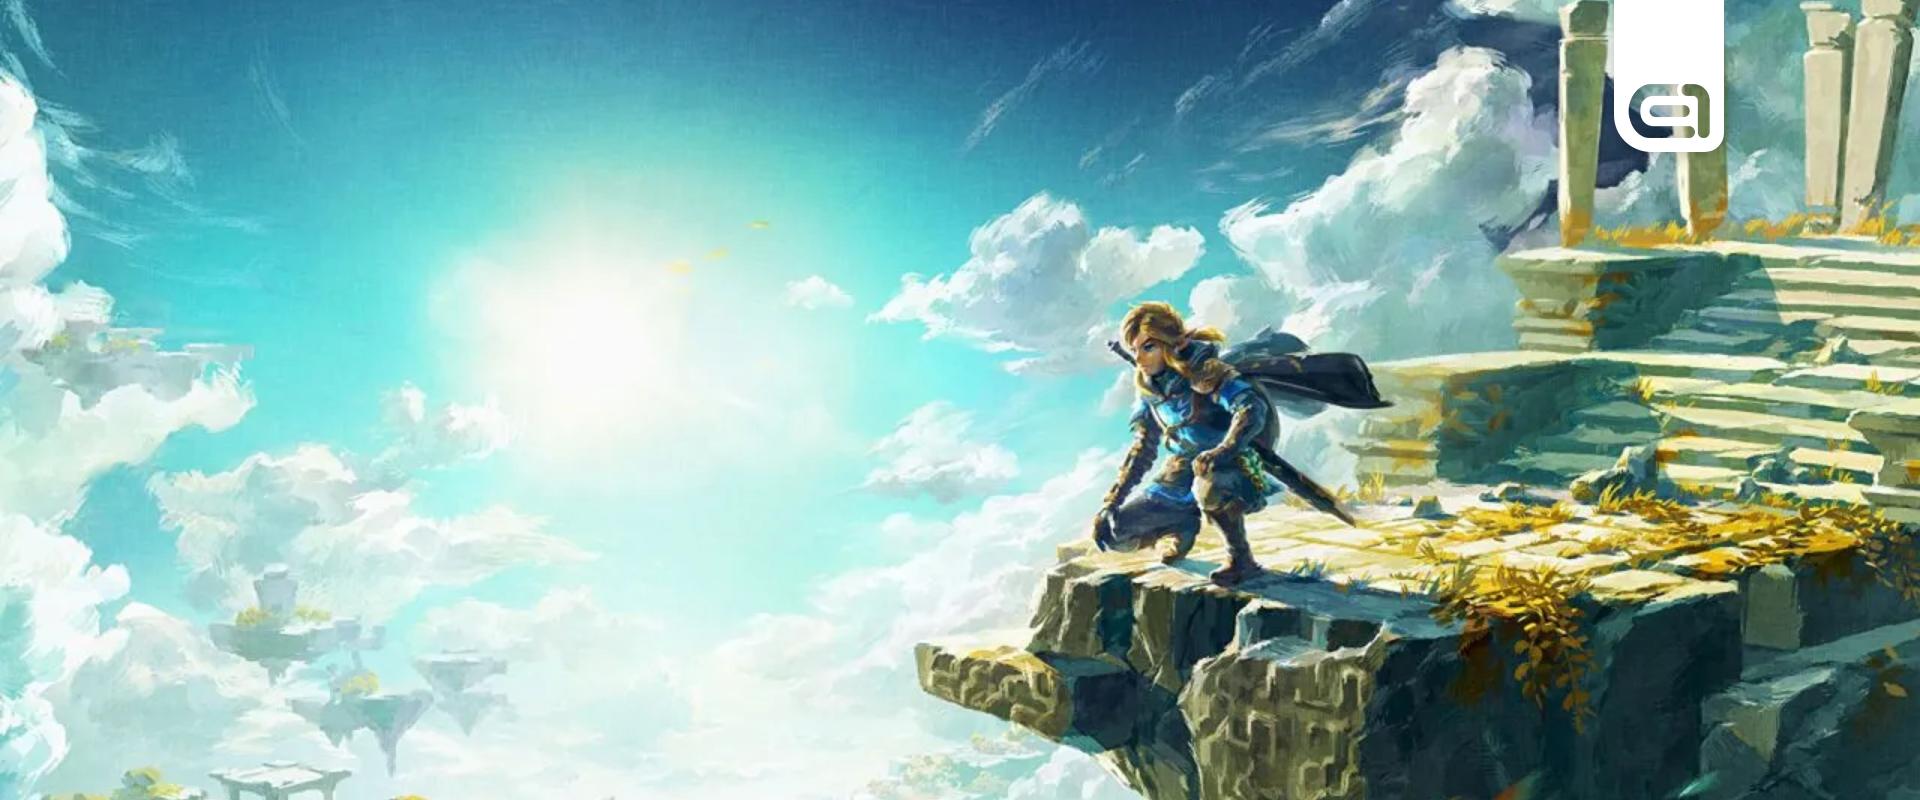 Tears of the Kingdom: A Nintendo most képeken is megmutatta, hogy mi várja a Zelda-rajongókat